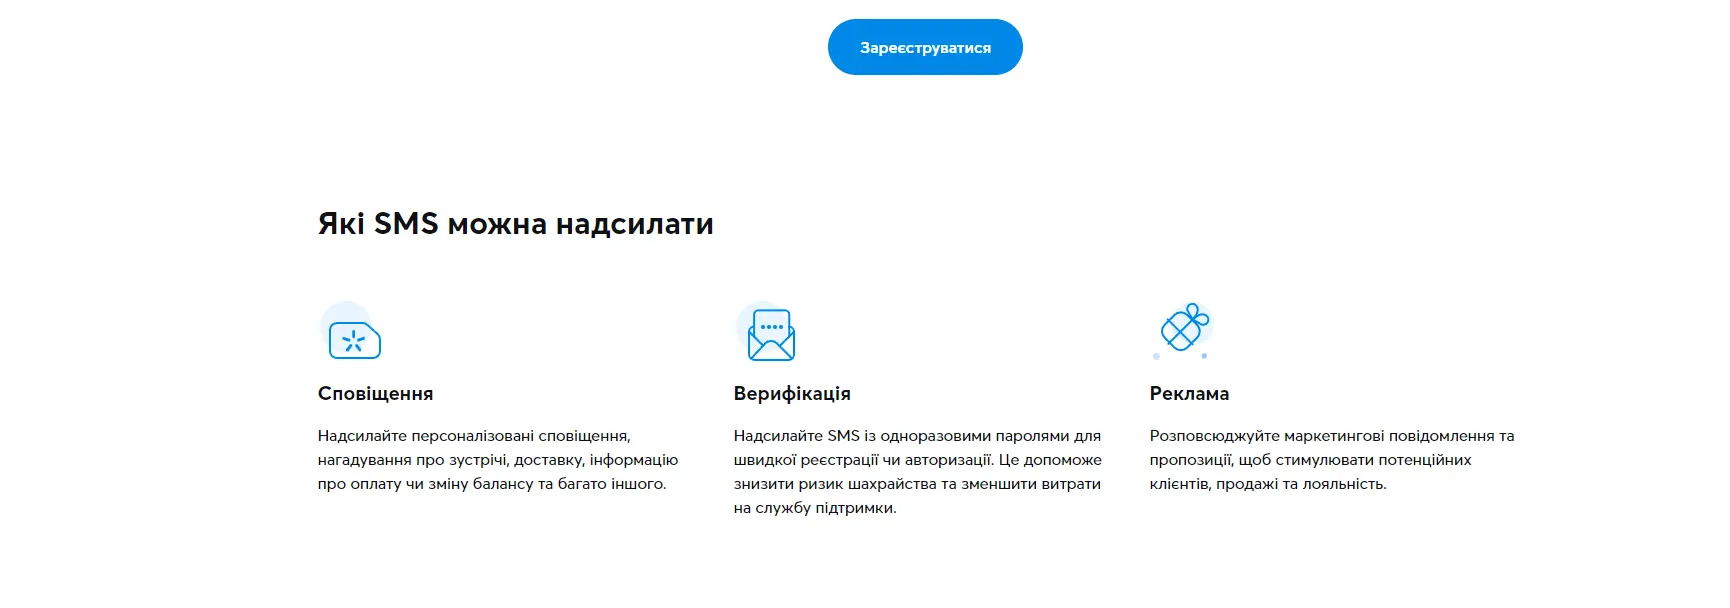 Верификация пользователя с помощью SMS от Kyivstar